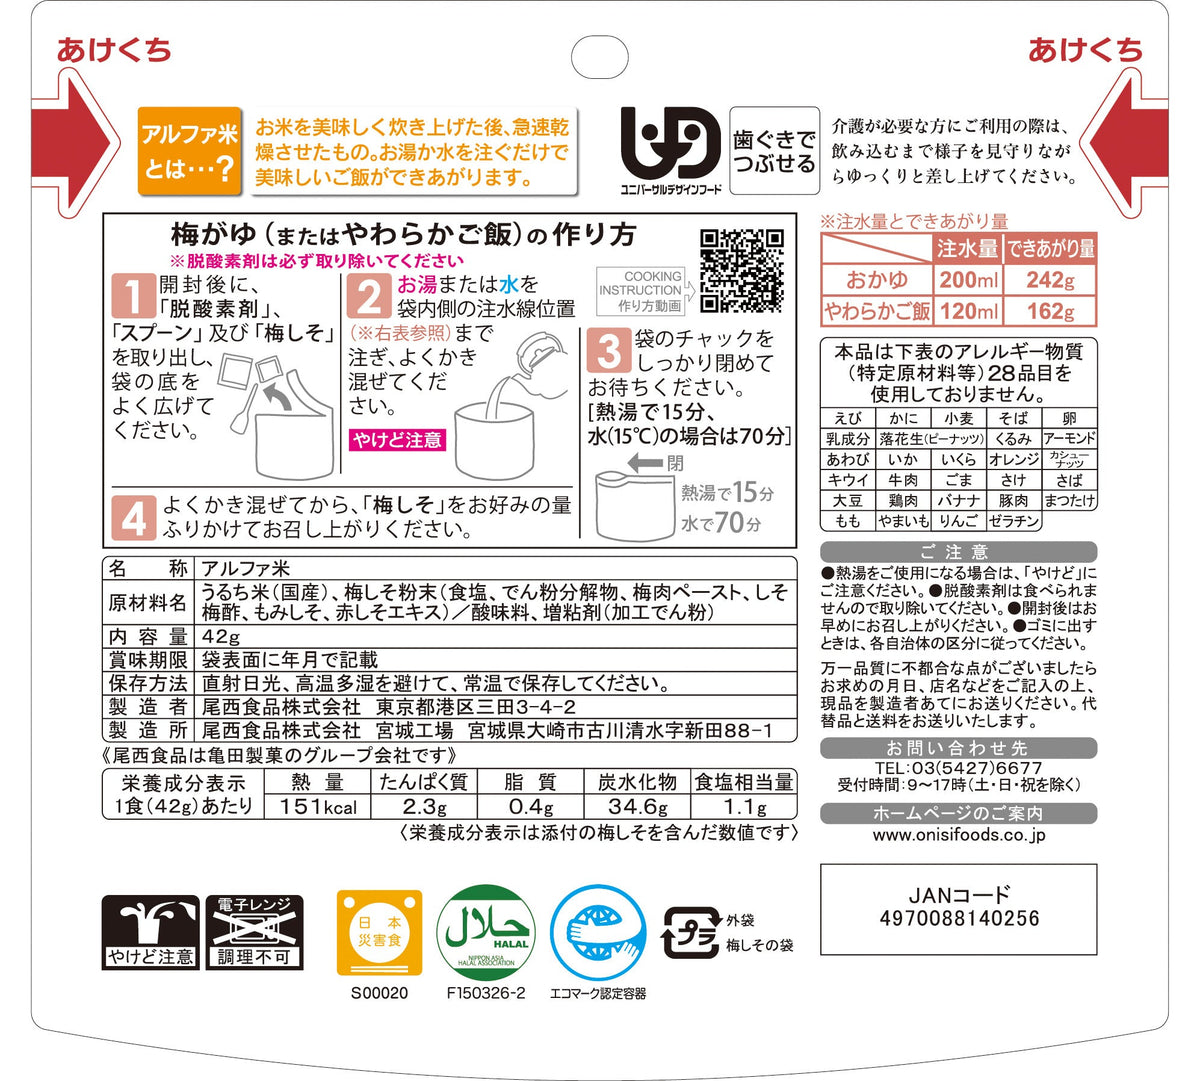 5年保存】尾西の梅がゆ(1食分)×50袋 | 亀田製菓通販いちば